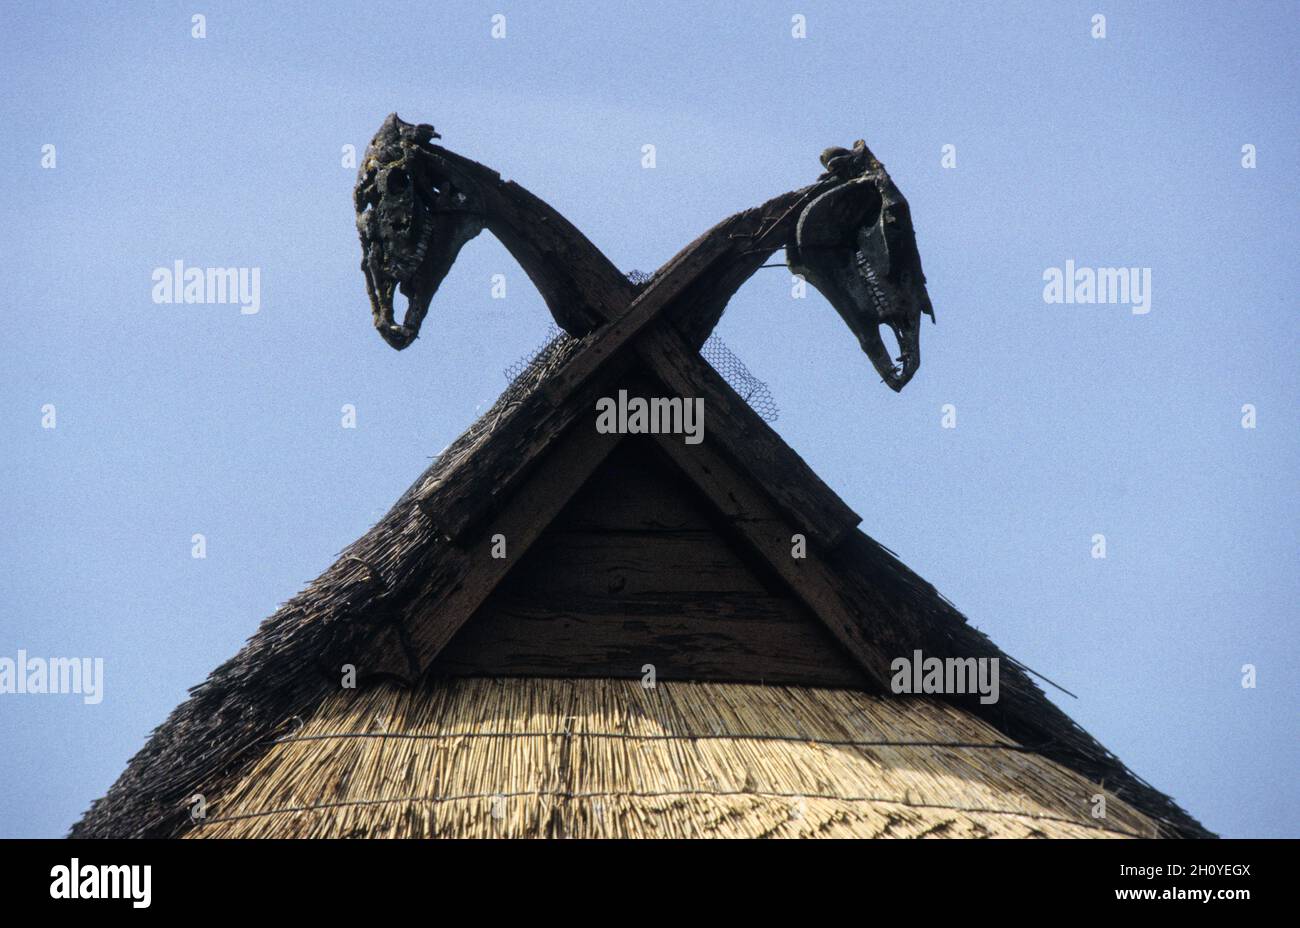 Ein traditionelles strohgedecktes Dachhaus mit Pferdeköpfen als Giebeldekoration. Viele norddeutsche Reishäuser tragen hölzerne, oft gestaltete Pferdeköpfe als Ornamente, die auf das frühe Mittelalter und die Wikingerzeit der Region zurückgehen. Dieser Besitzer hat echte Schädel benutzt. Stockfoto